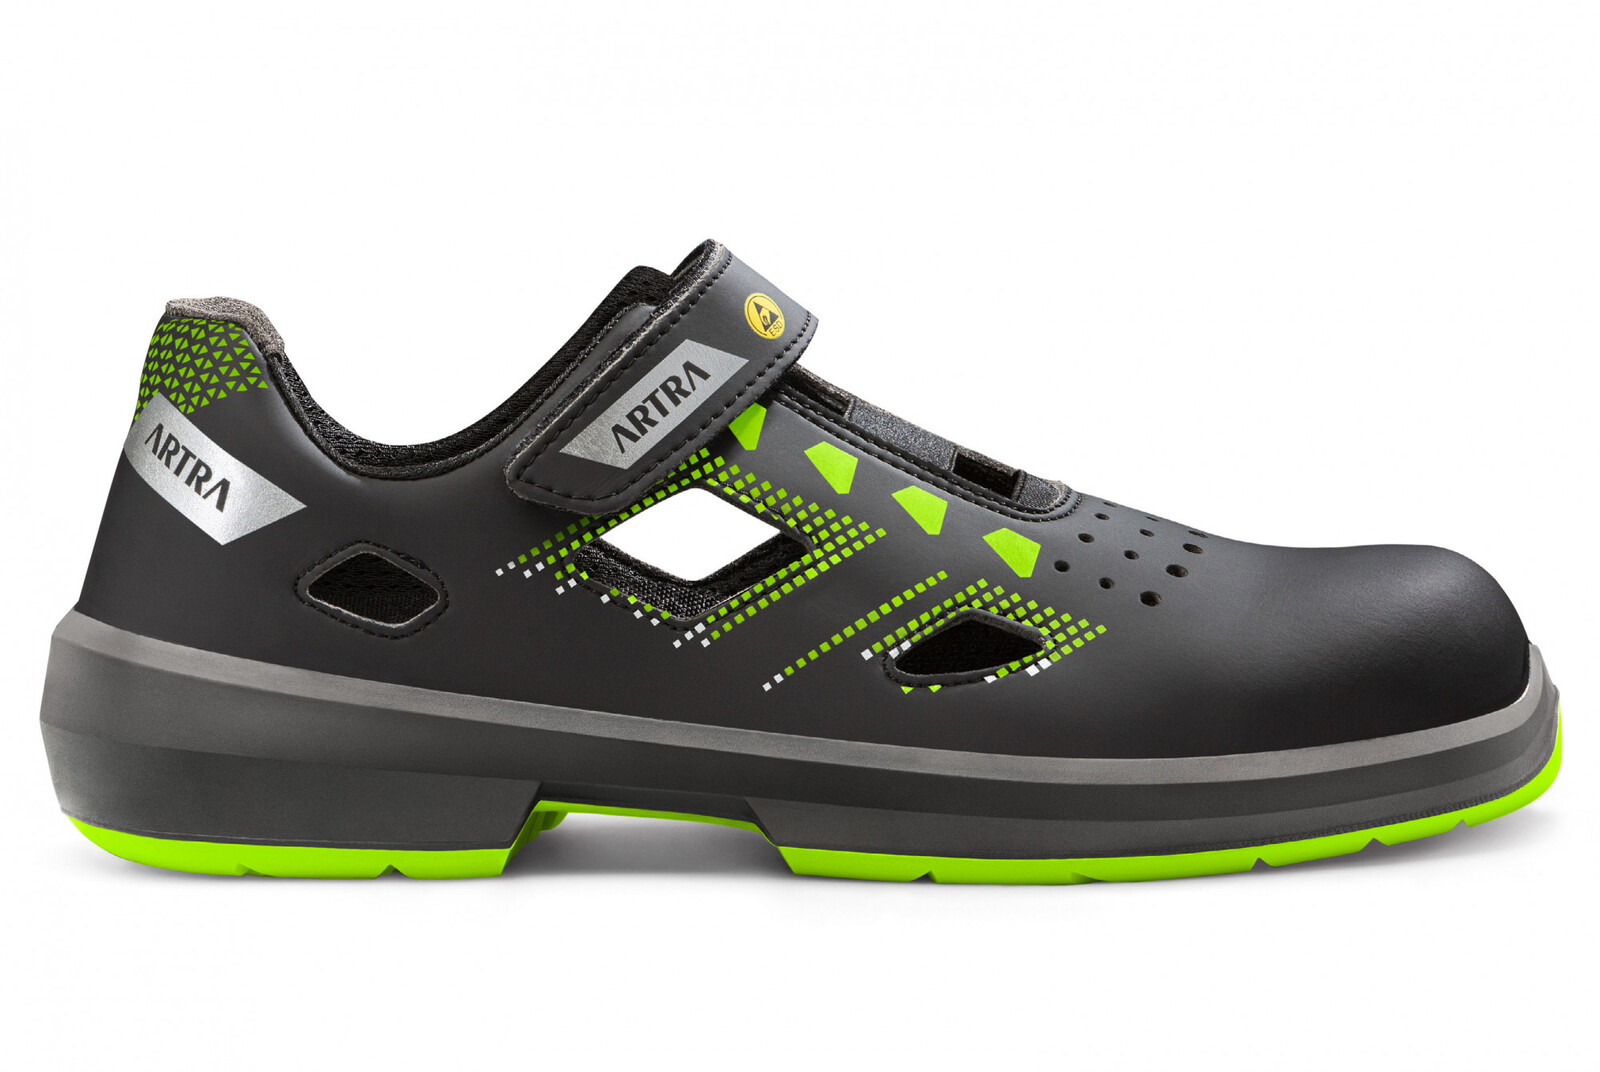 Bezpečnostné sandále Artra Arzo 805 678080 S1P SRC ESD MF - veľkosť: 36, farba: čierna/zelená